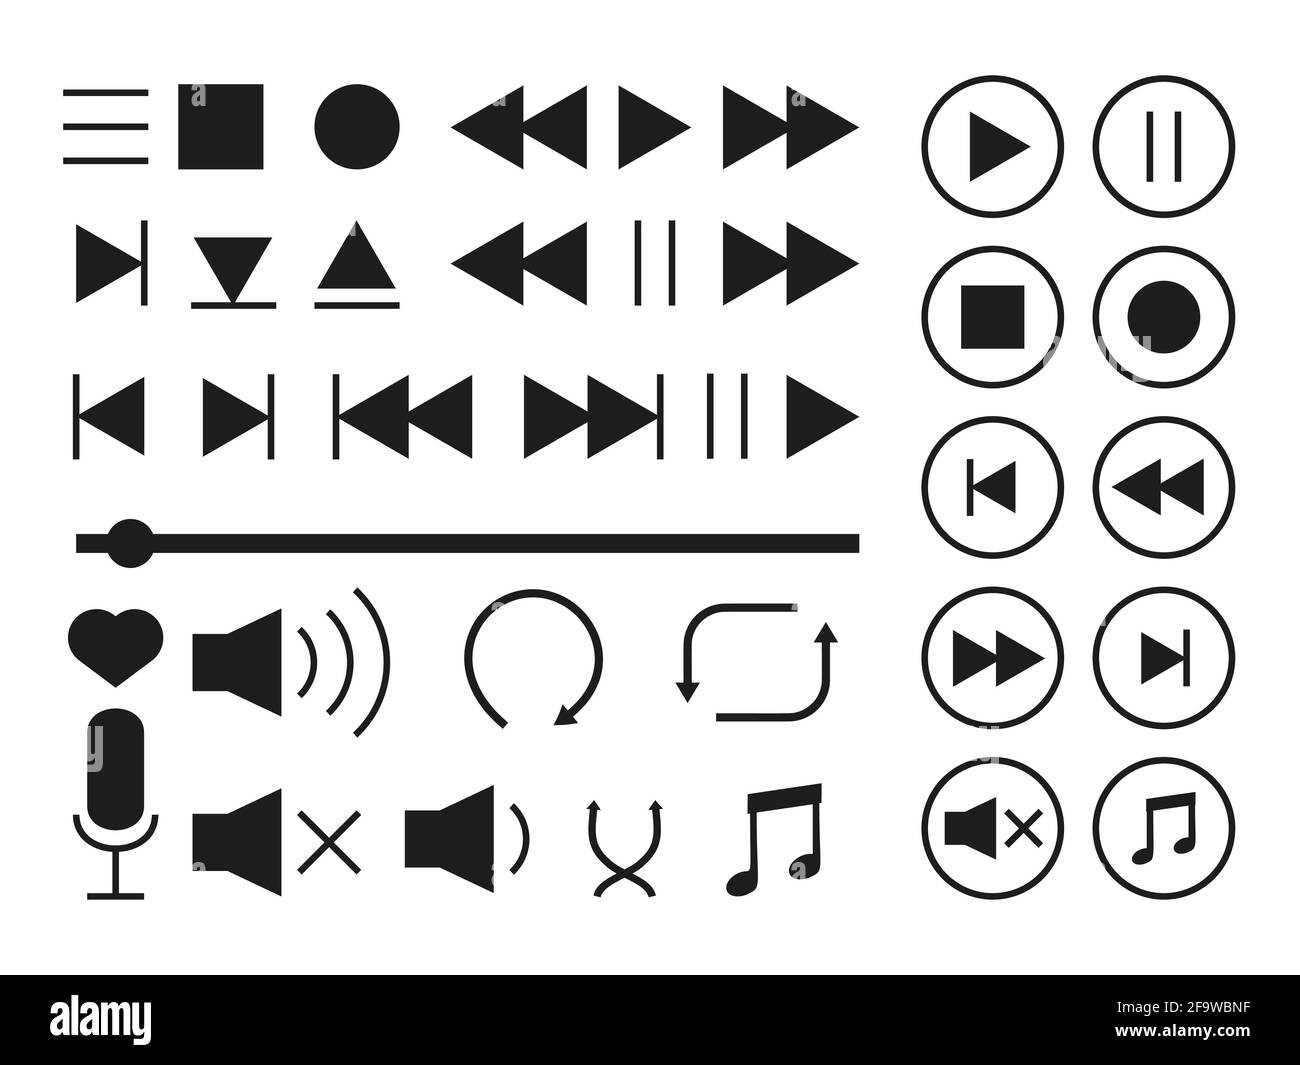 Iconos del reproductor multimedia configurados. Colección de señales  multimedia. Interfaz de música de símbolos de silueta negros. Diferentes  botones, como reproducir o pausar, detener, grabar, avanzar o retroceder.  Ilustración de vector aislado